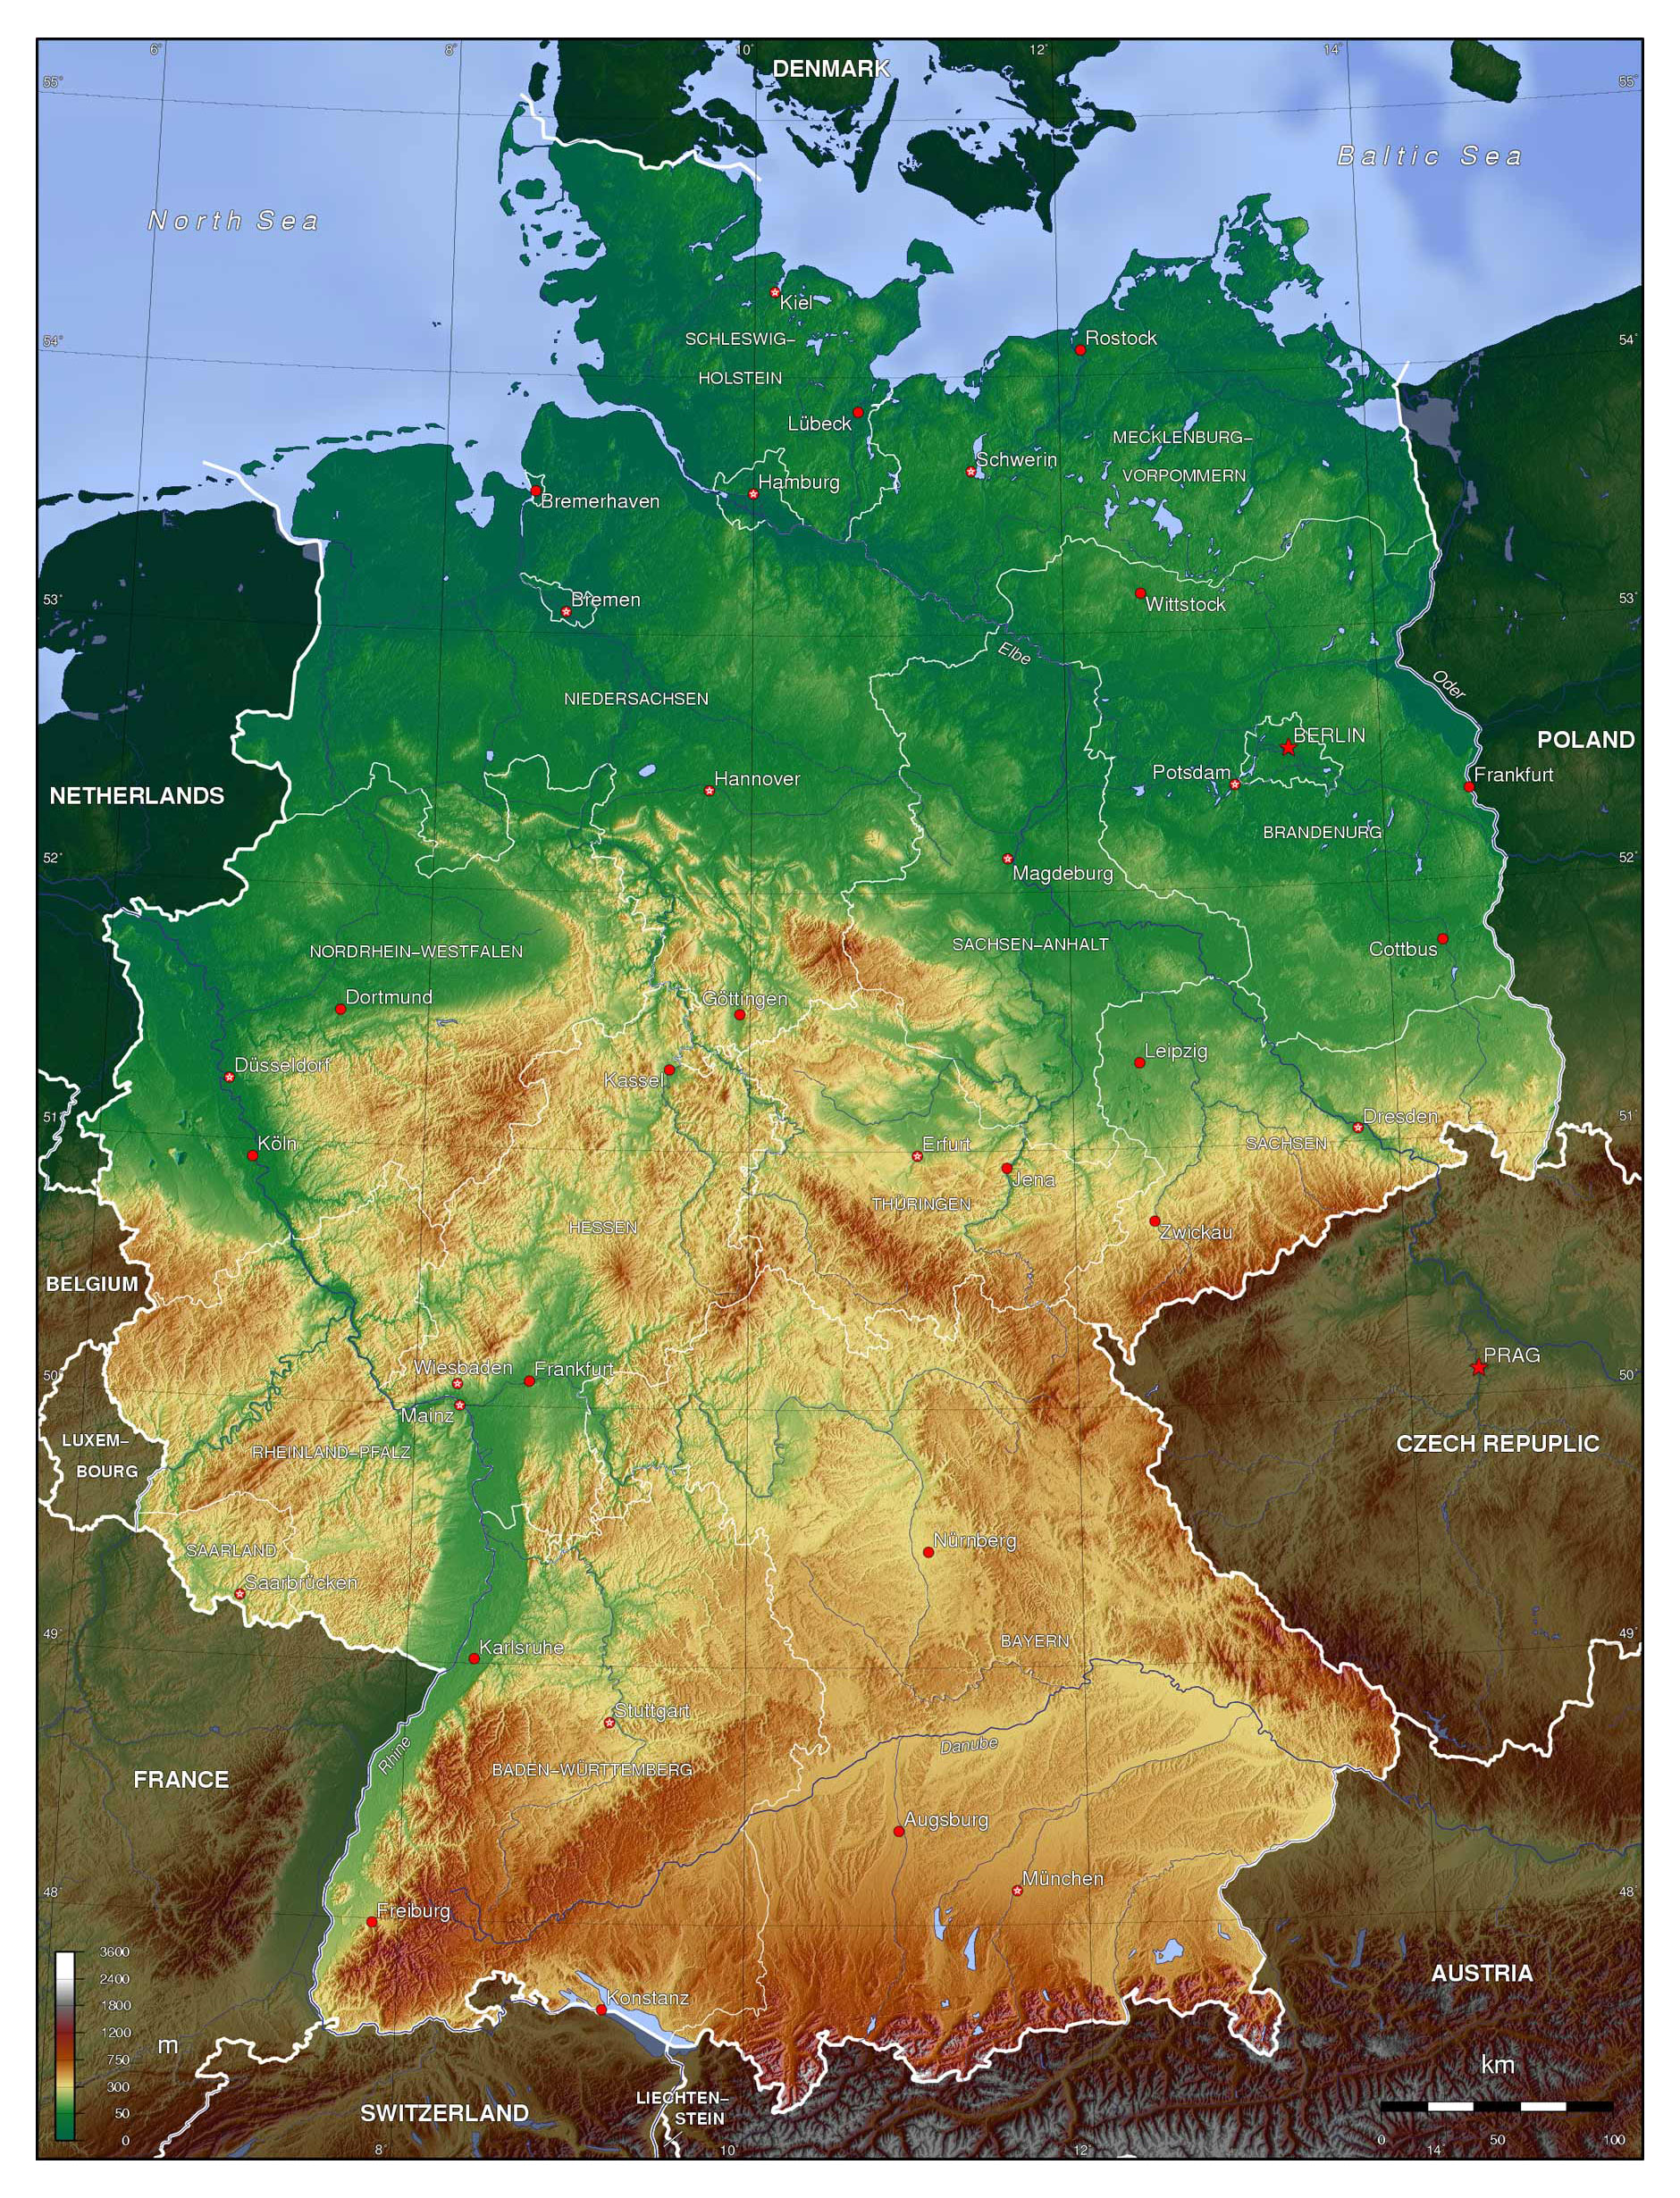 Năm 2024, bản đồ CHLB Đức sẽ hiển thị các thành phố đang phát triển và các điểm đến mới đầy hứa hẹn. Với nền kinh tế mạnh mẽ và nền văn hóa đa dạng, Đức là một quốc gia tuyệt vời để khám phá. Hãy xem qua bản đồ CHLB Đức năm 2024 để tìm hiểu những điểm đến thú vị.